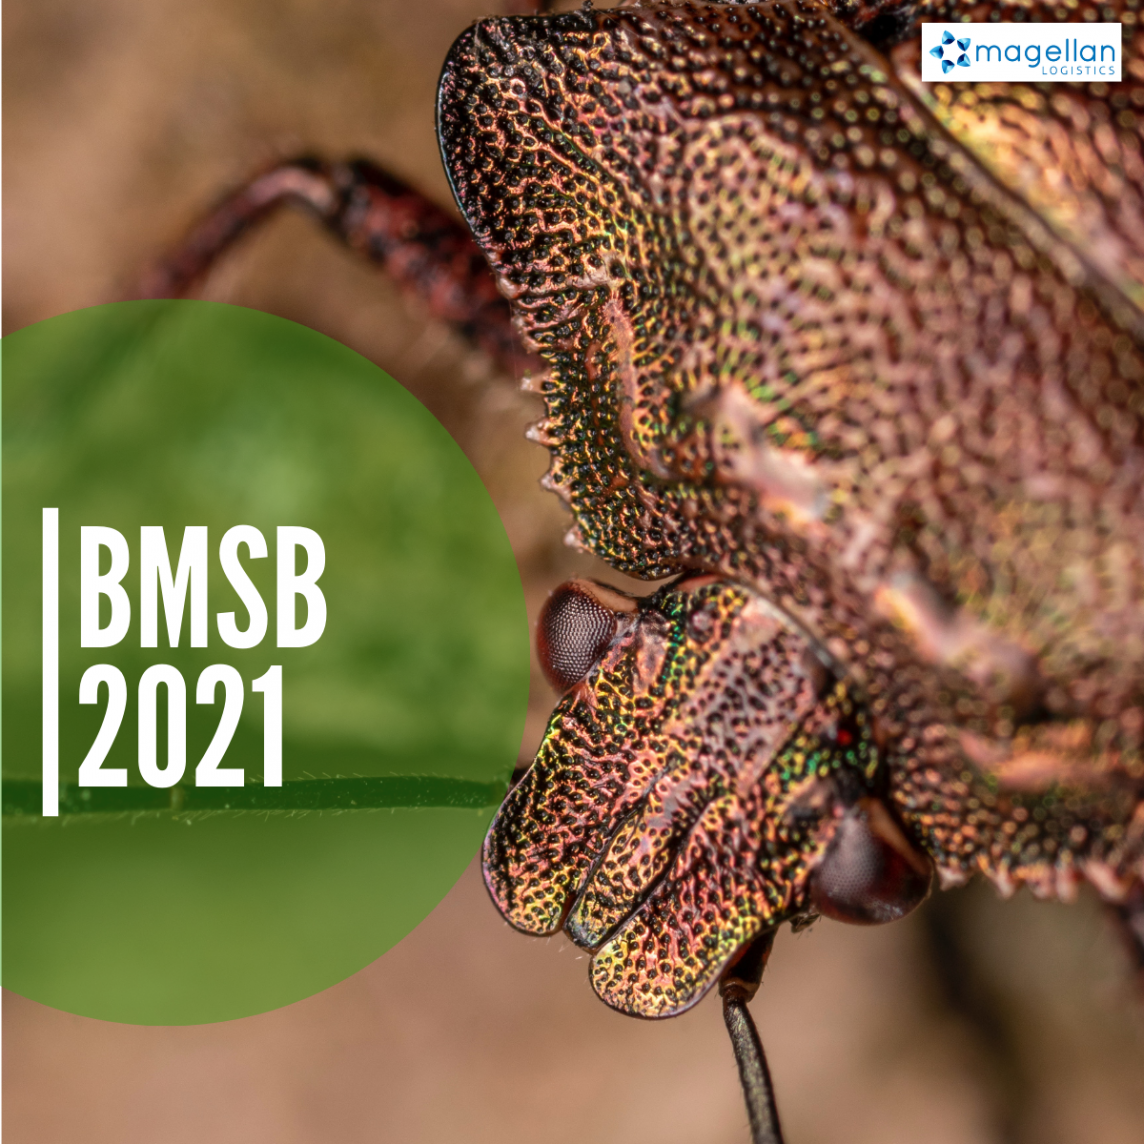 Brown Marmorated Stink Bugs 2021 – seasonal measures